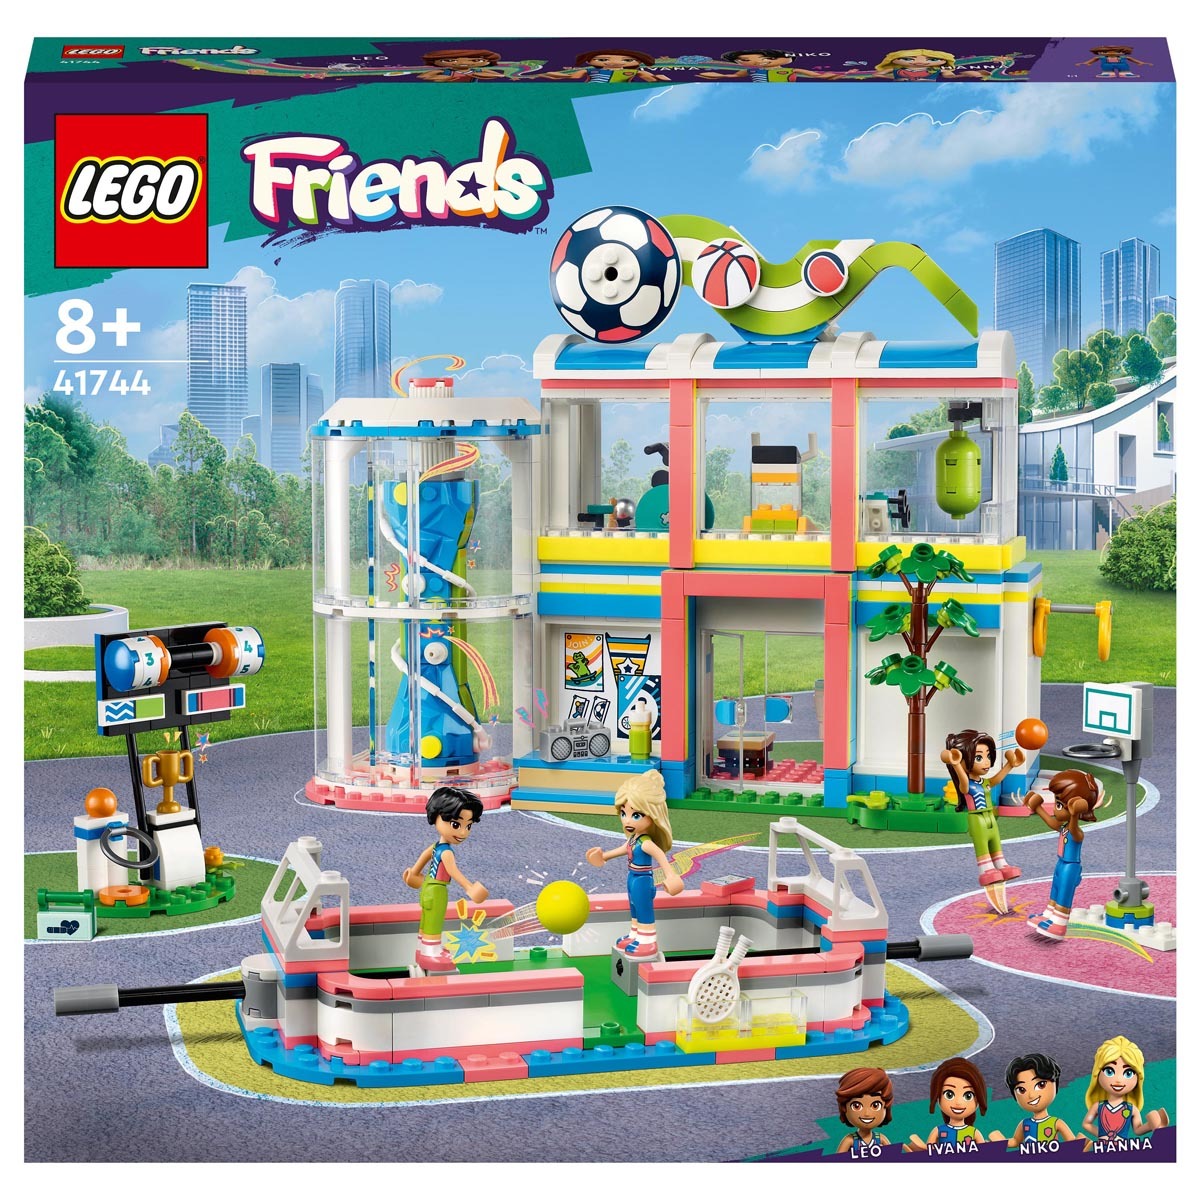 LEGO 41744 Friends Sports Center Building Toy com jogos de futebol, ba